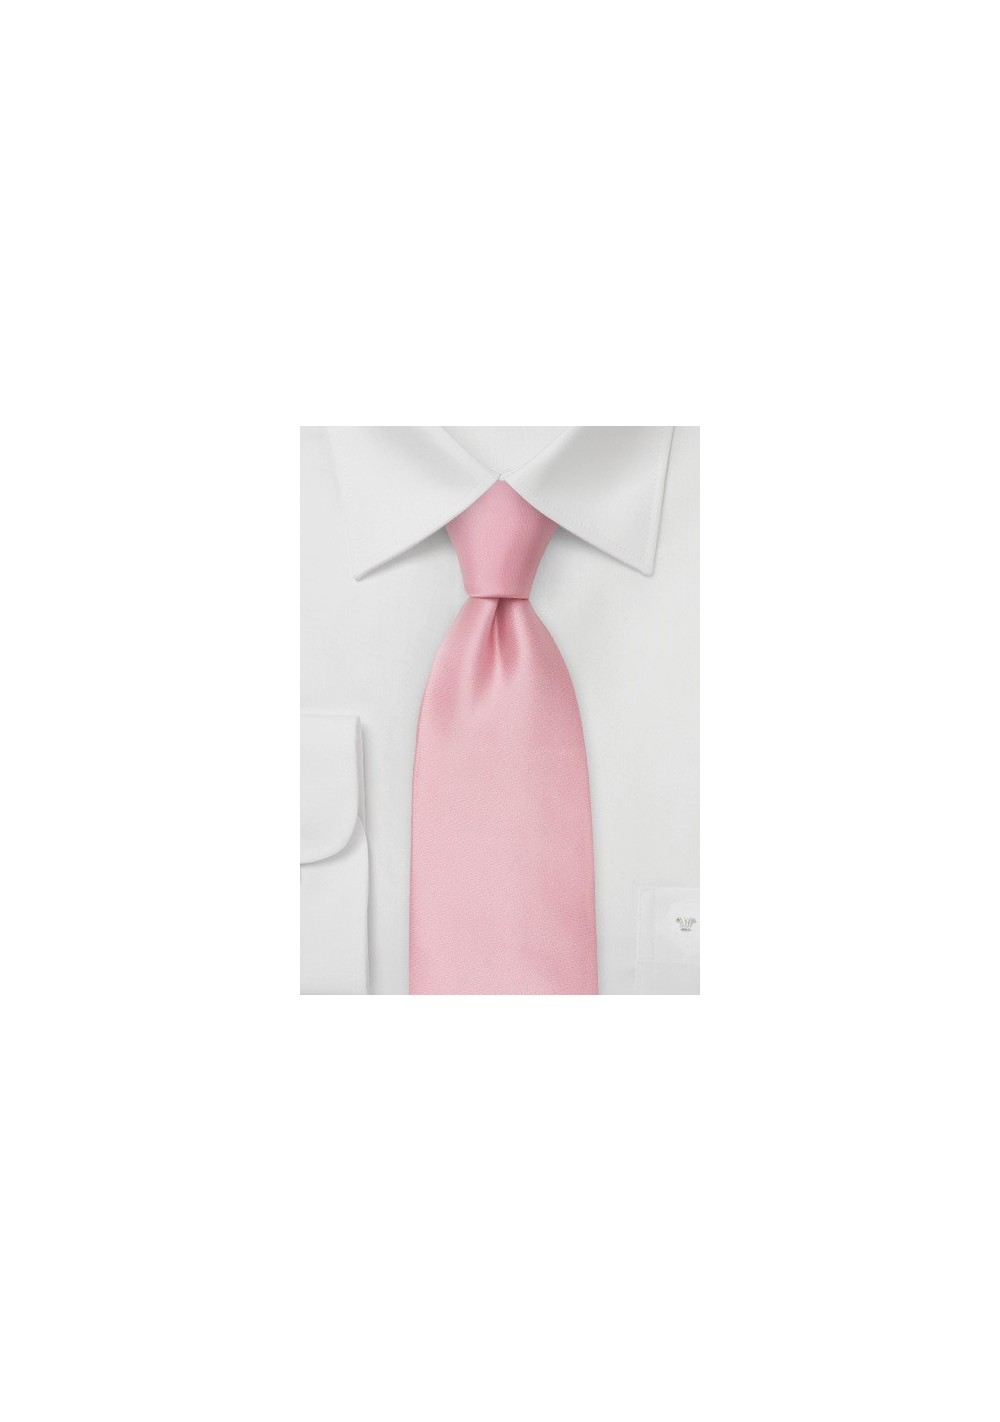 Light Pink Silk Necktie in Kids Size